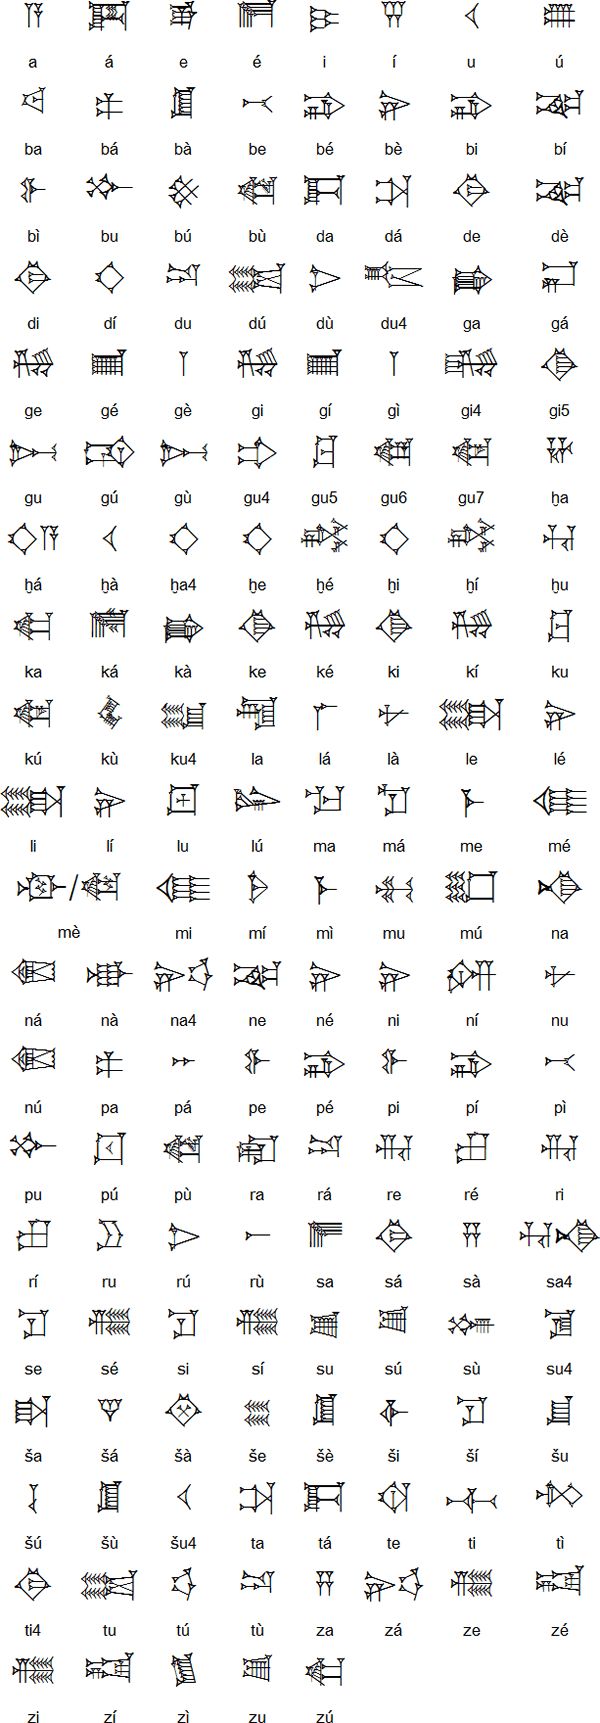 cuneiform symbols